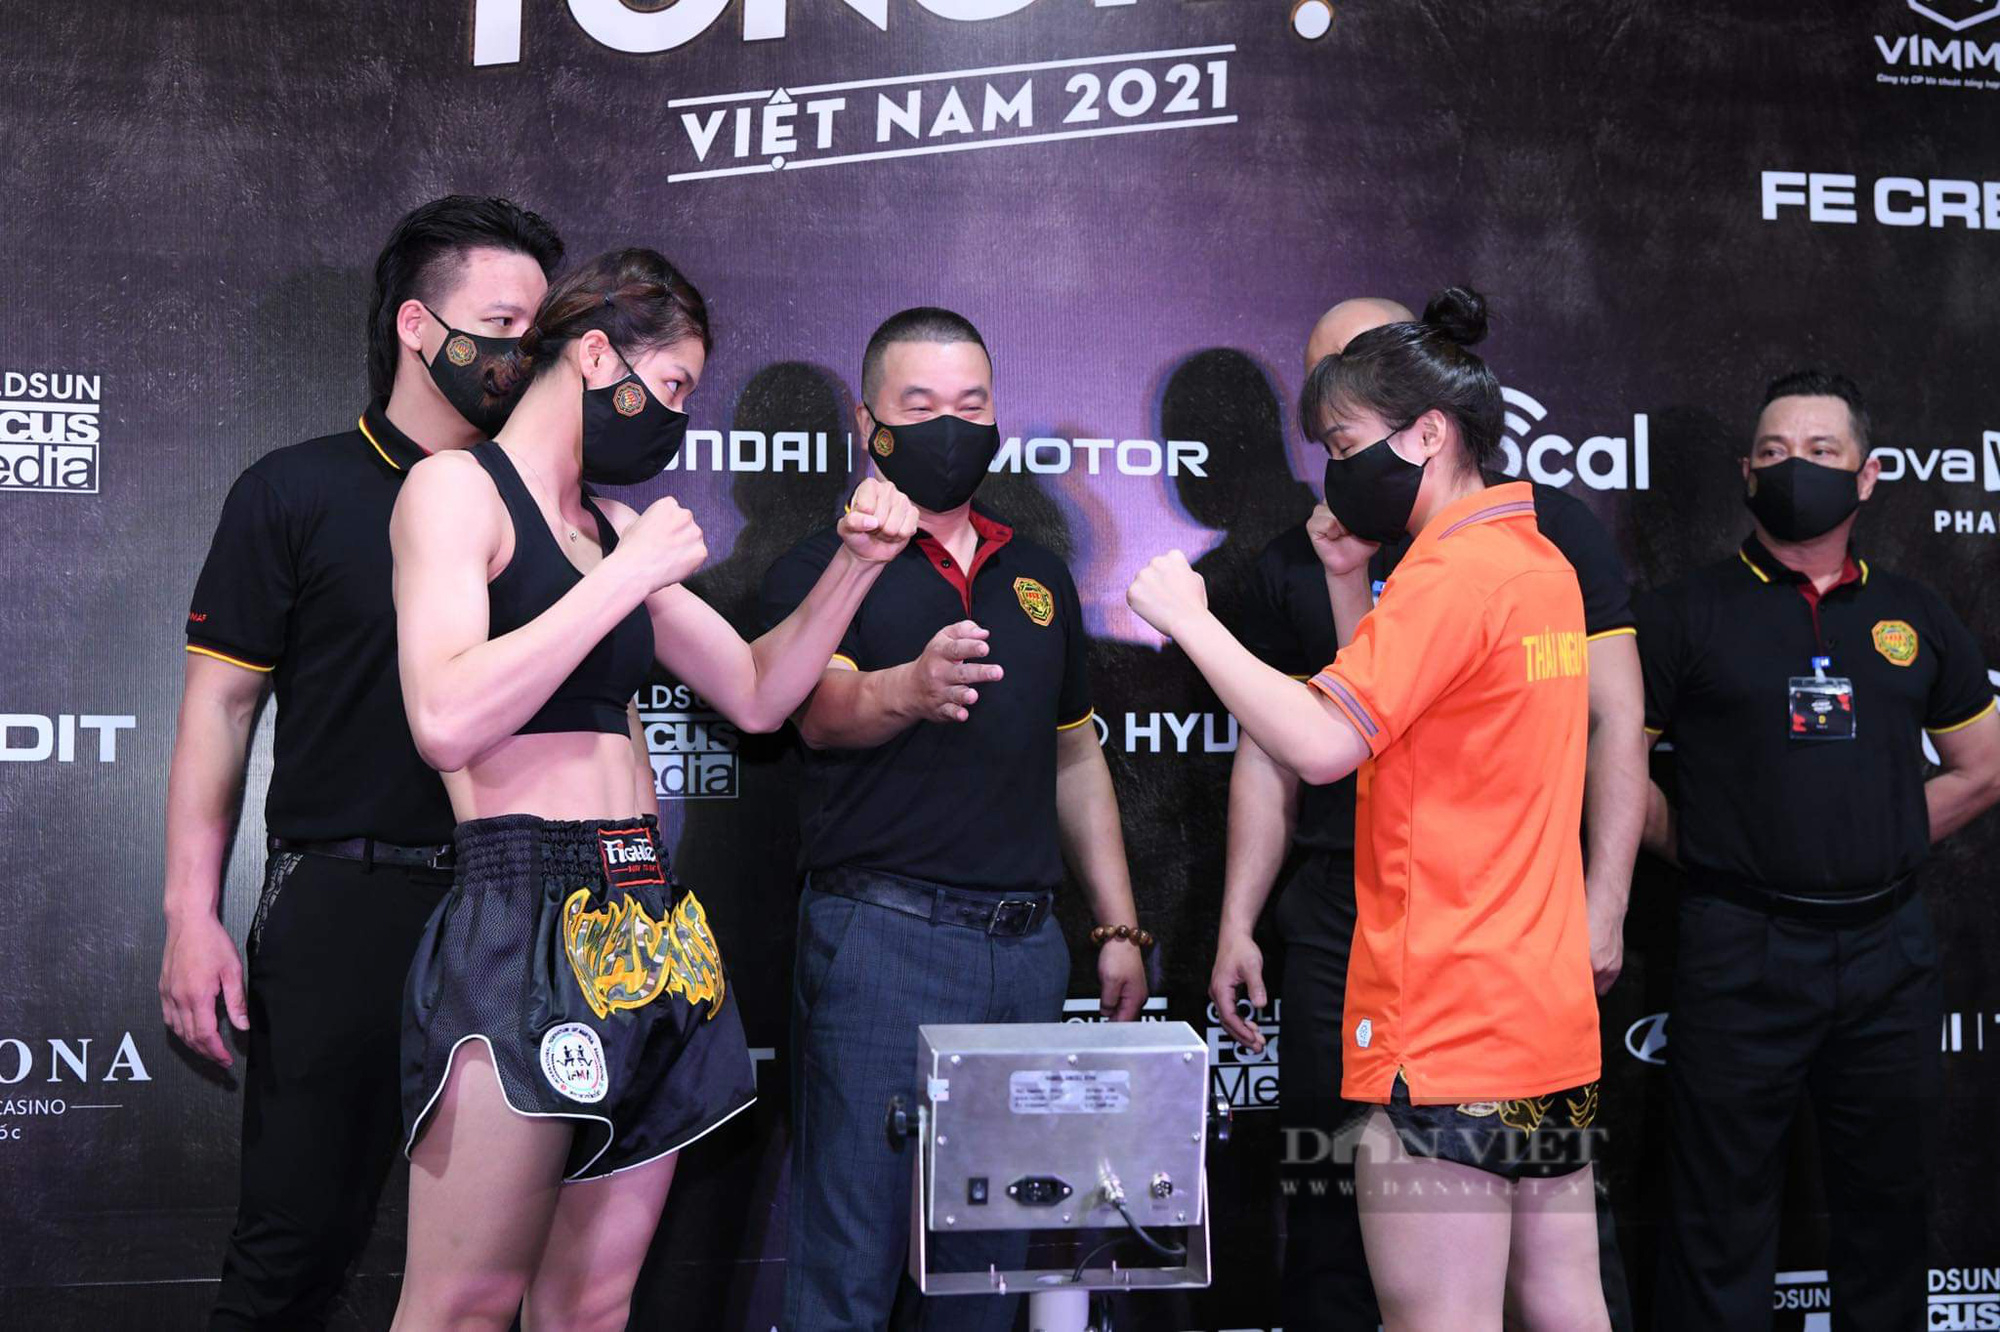 Sắp diễn ra giải đấu võ thuật tổng hợp MMA đầu tiên tại Việt Nam - Ảnh 4.